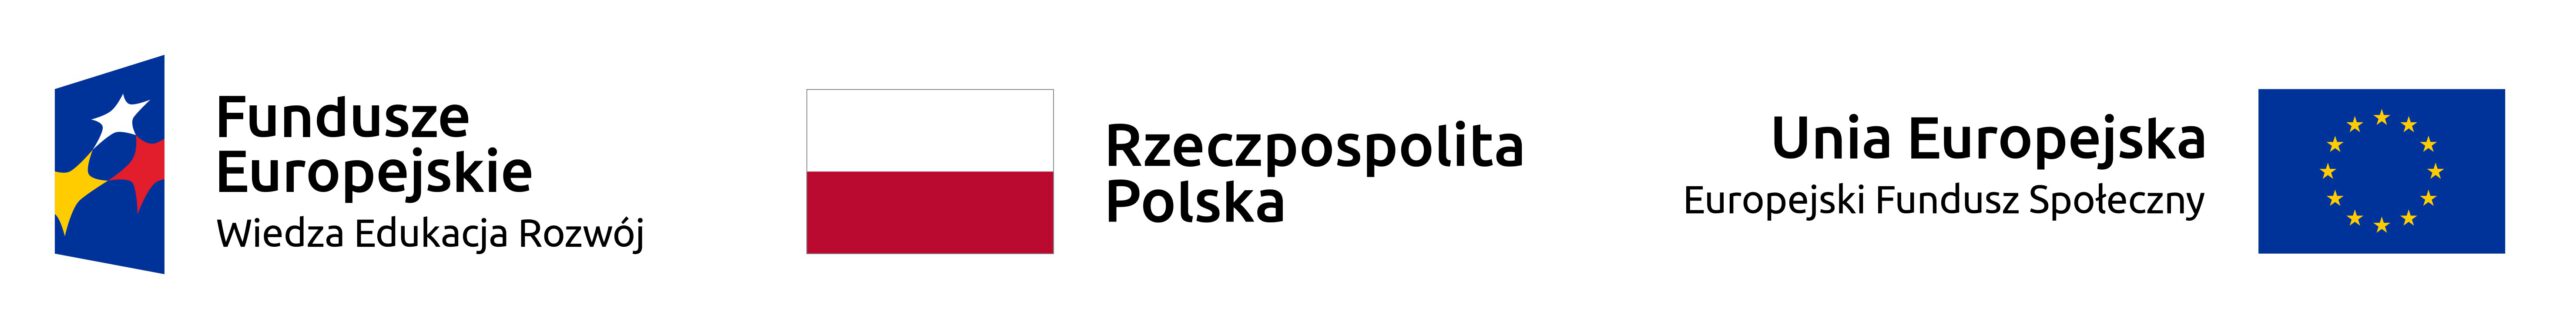 Logotypy i flagi Polski, Unii Europejskiej oraz Funduszy Europejskich